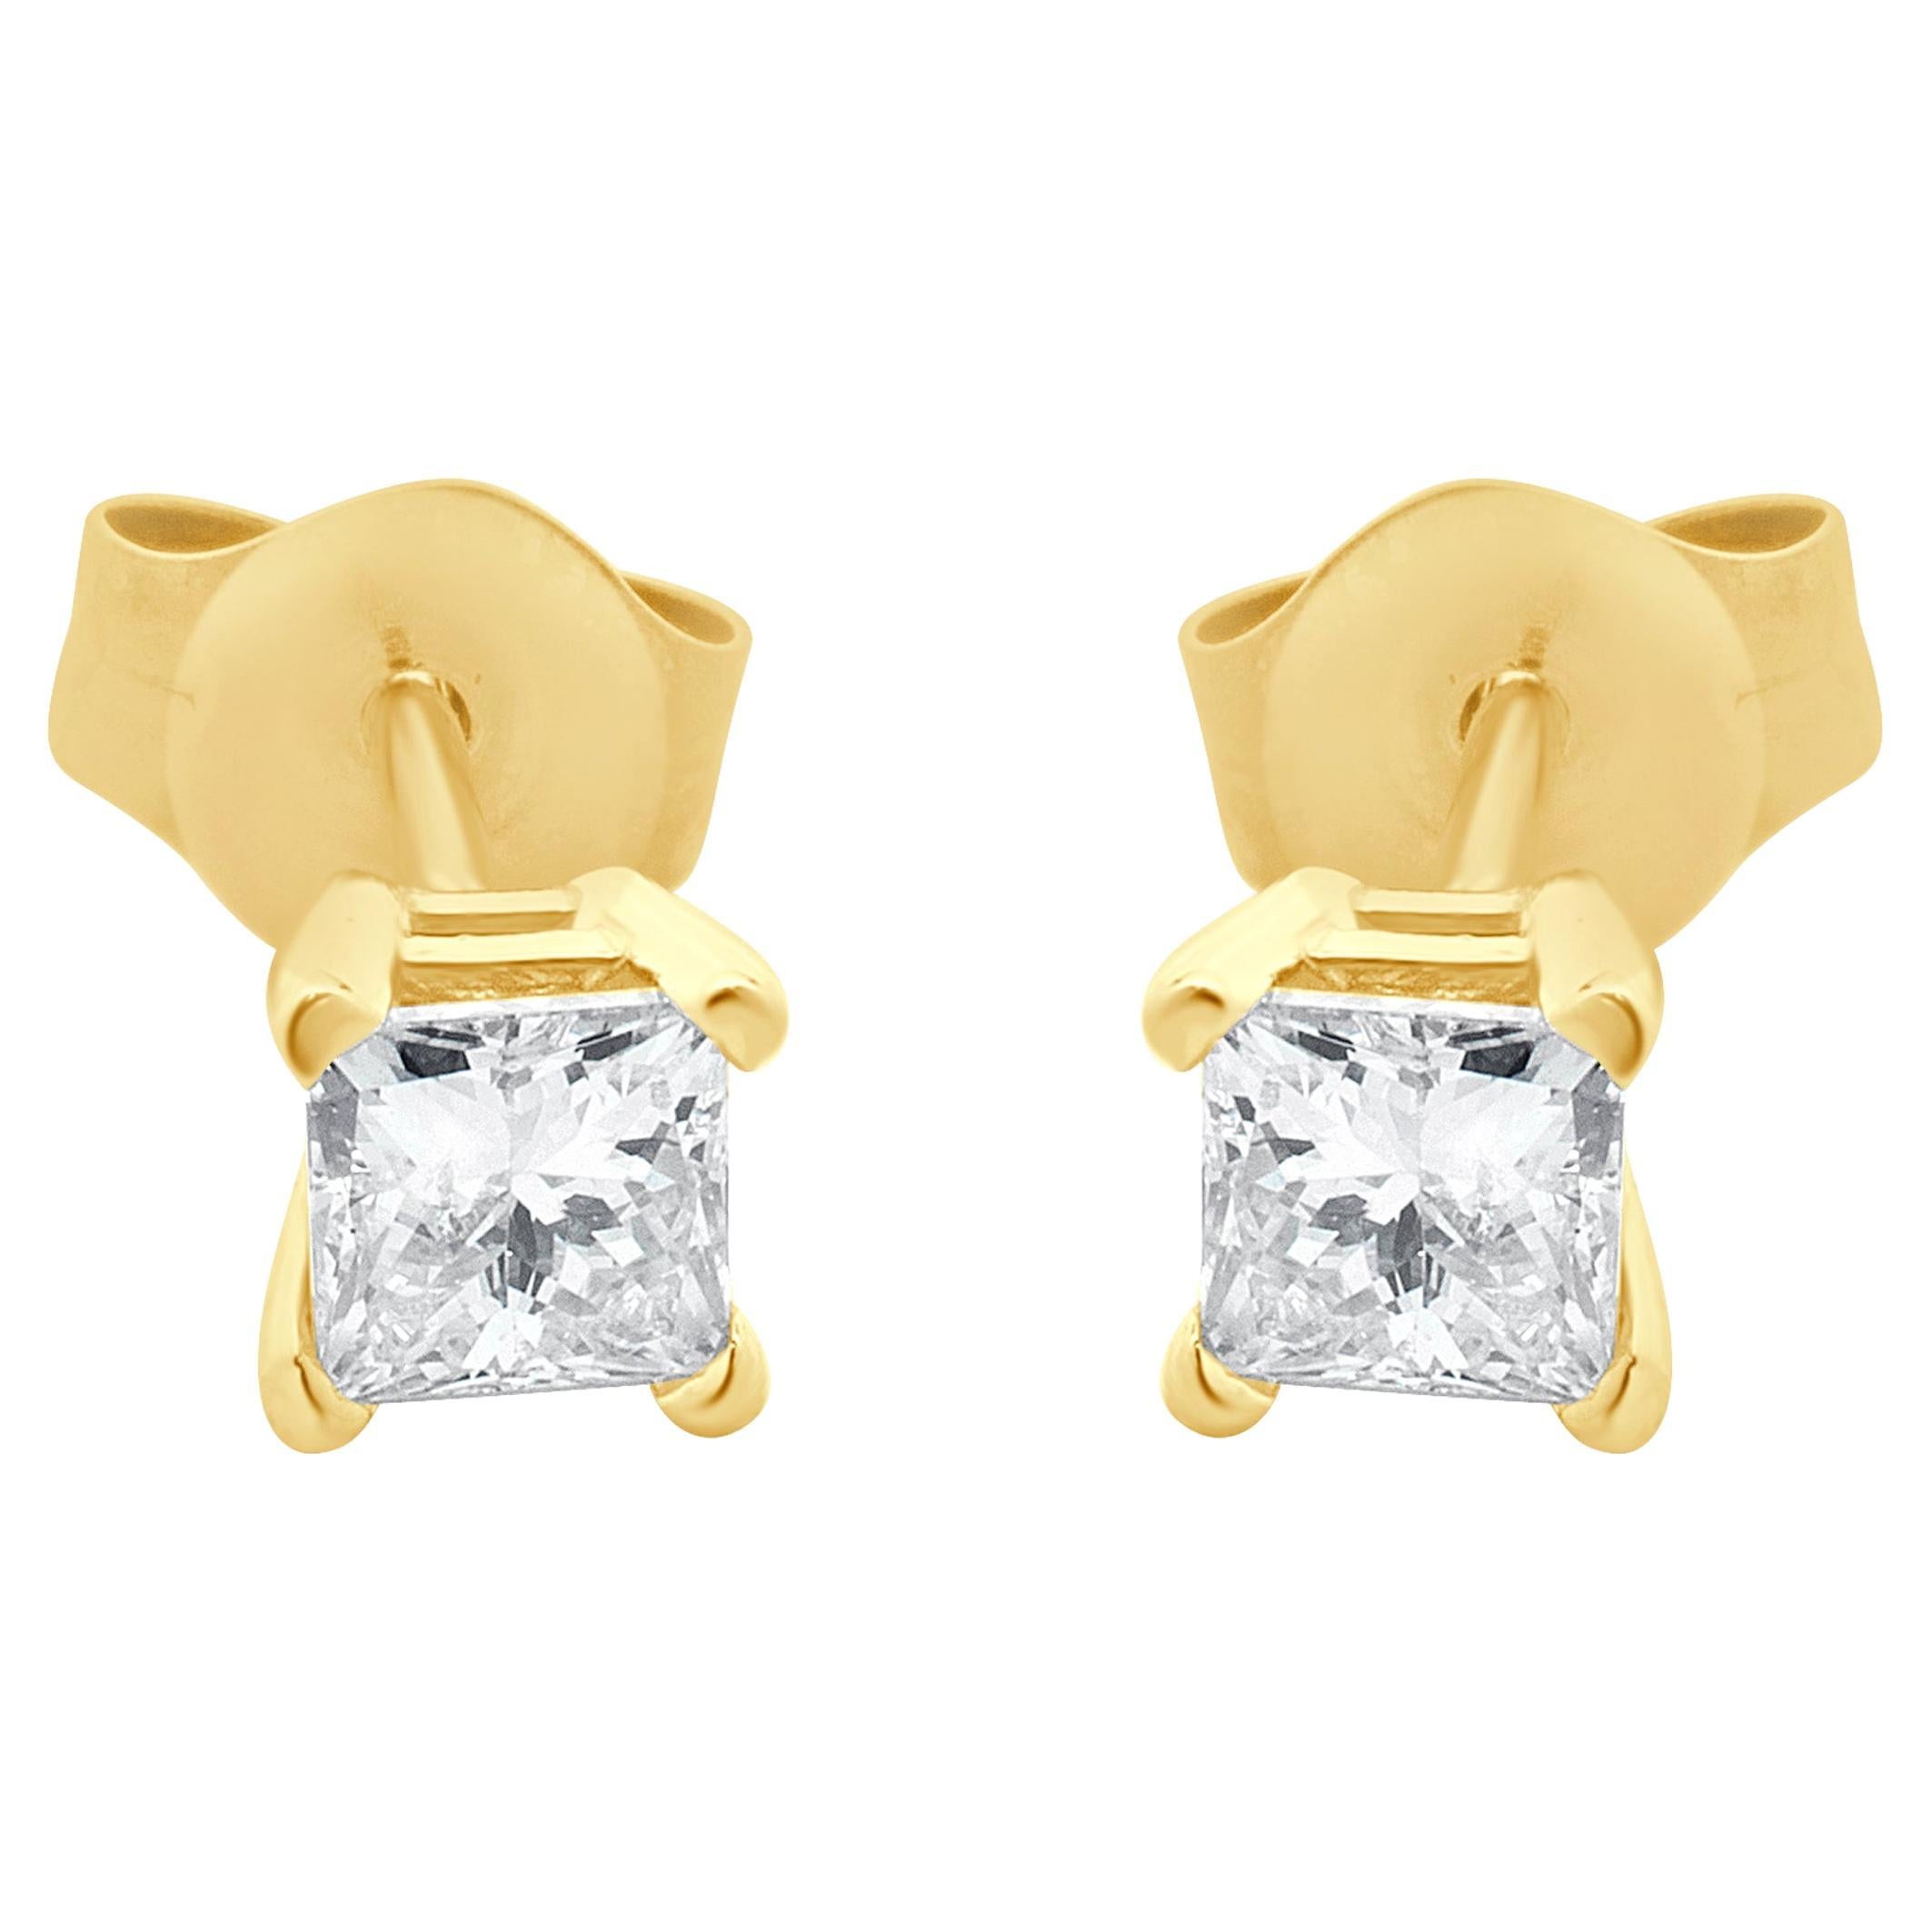 14 Karat Yellow Gold Princess Cut Diamond Stud Earrings